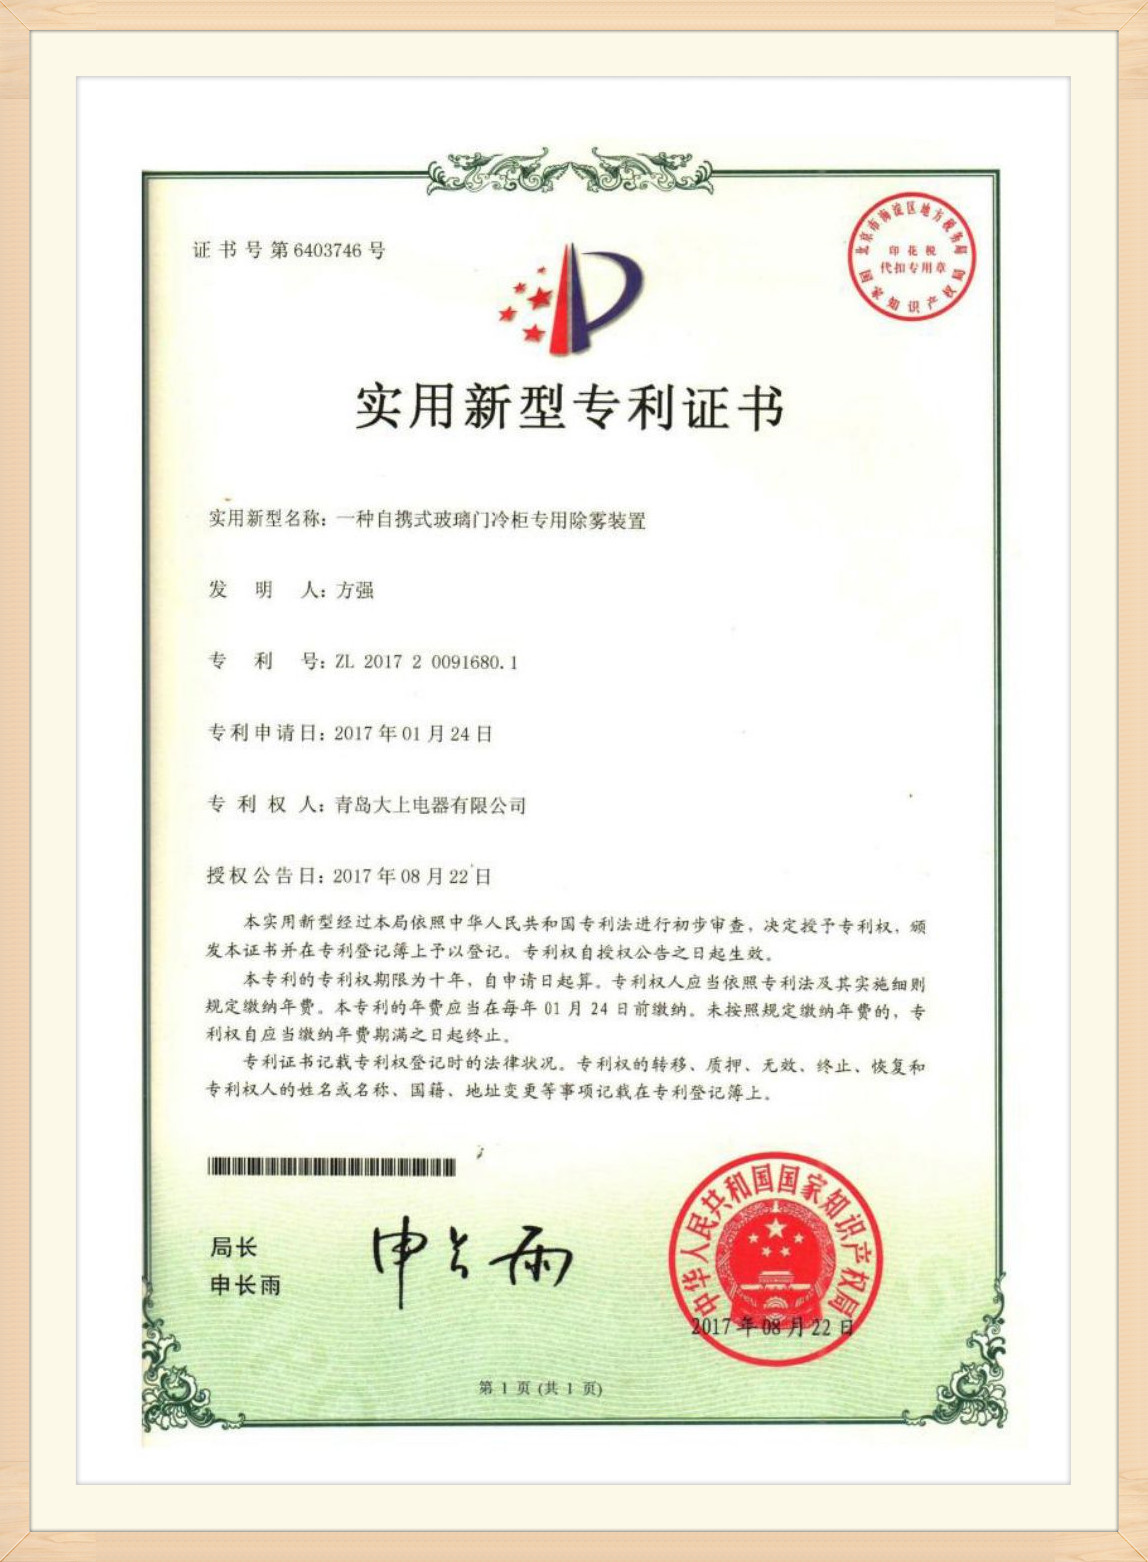 Certificado de patente (28)